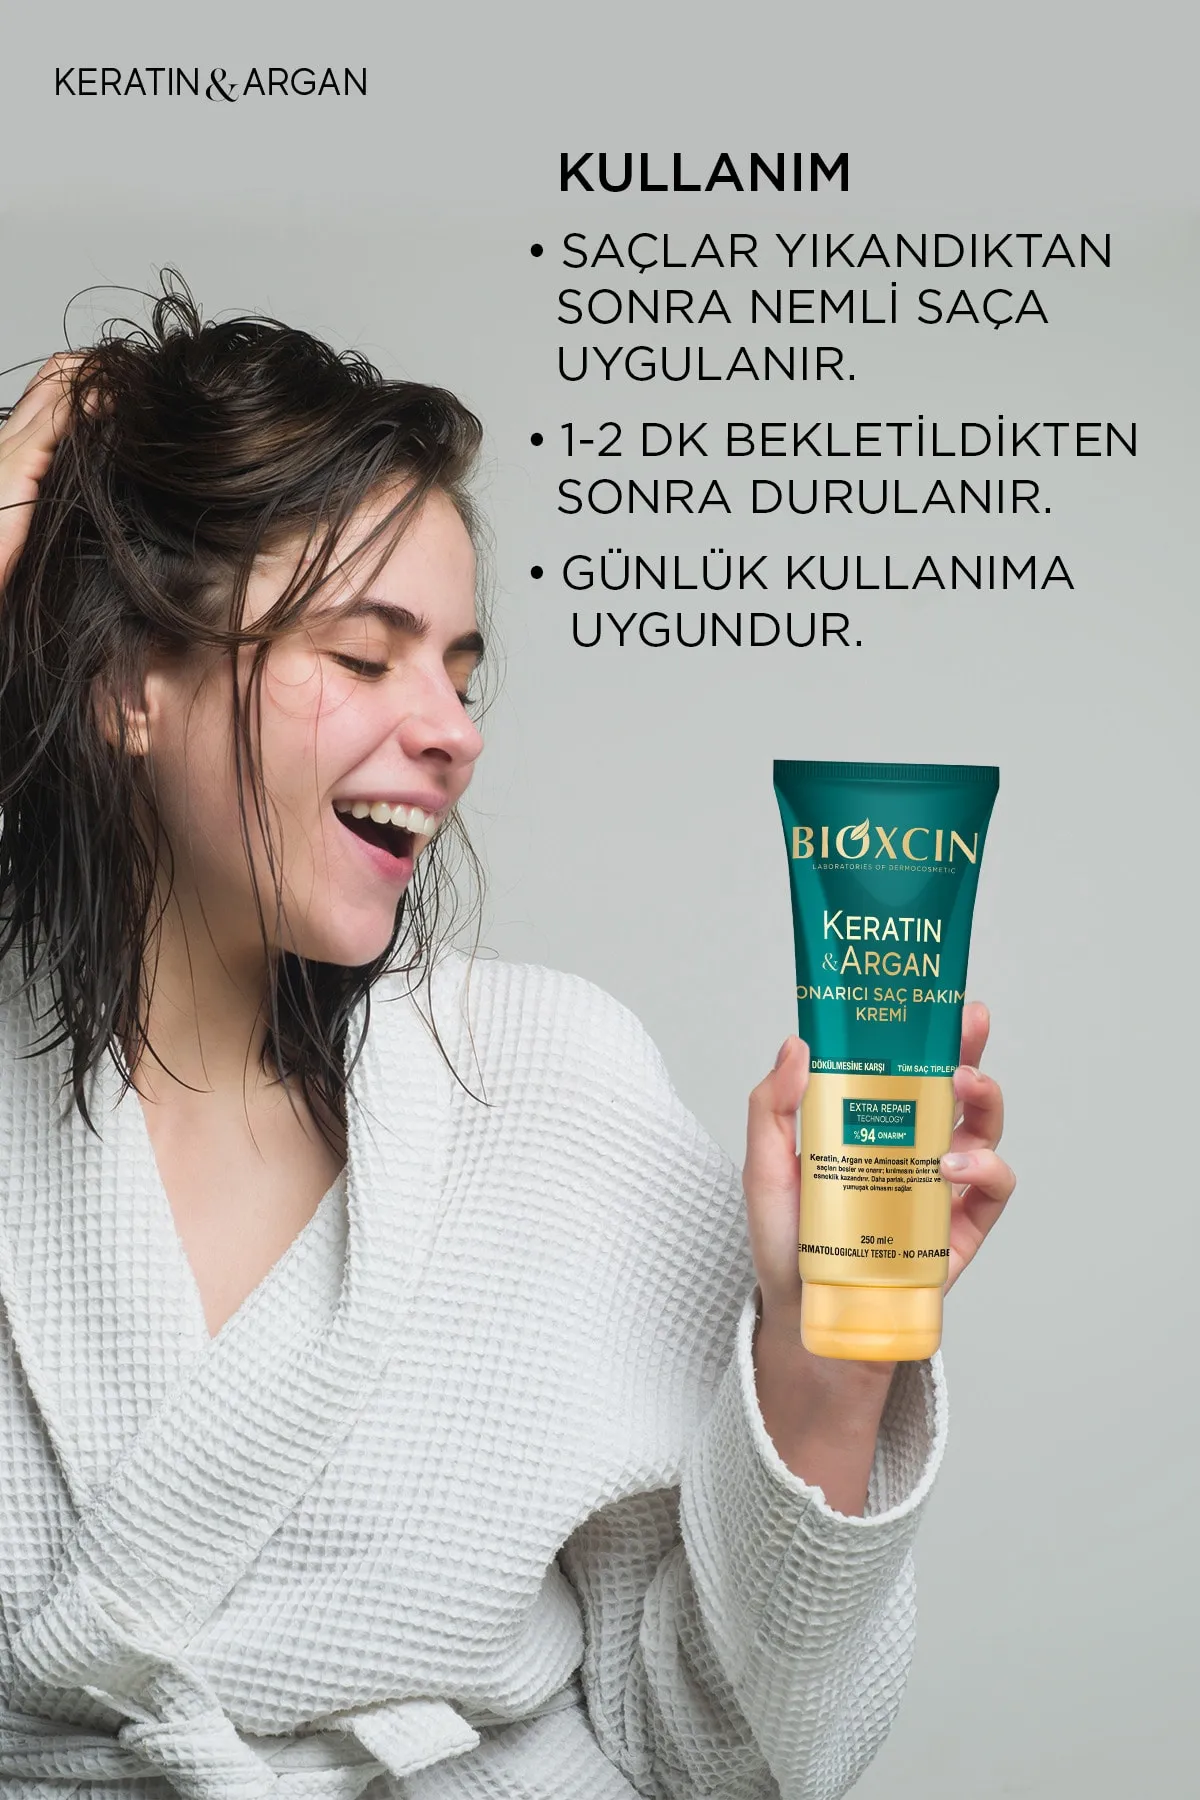 Bioxcin Saç Bakım Kremi Onarıcı Keratin & Argan 250 ml